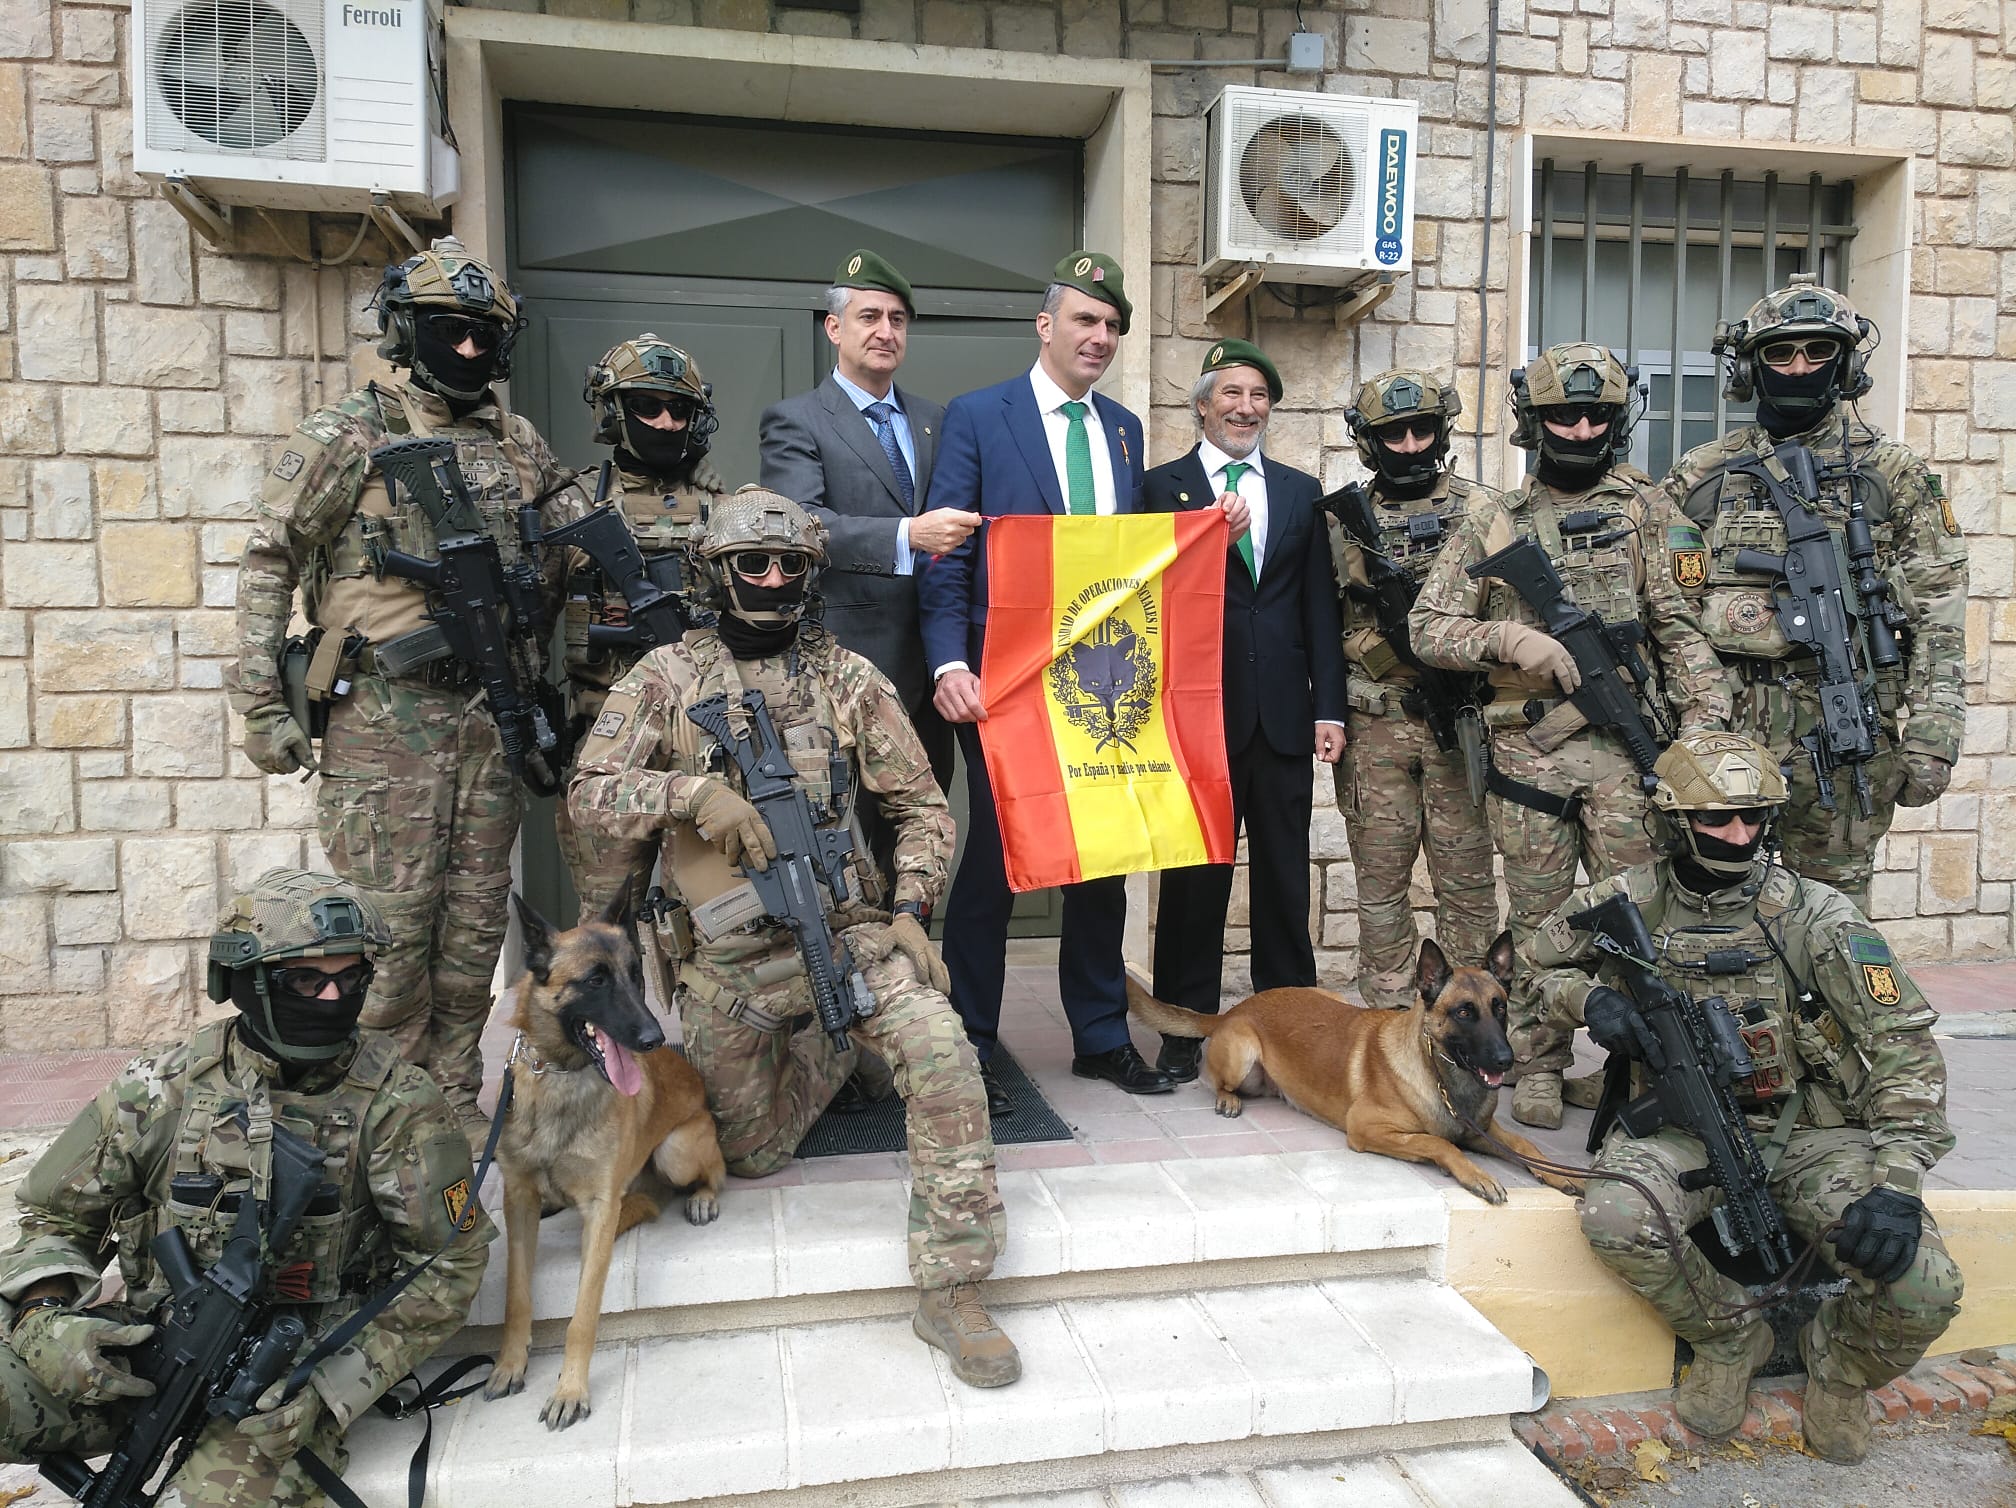 Soldados de élite españoles se fotografían con un dirigente de Vox